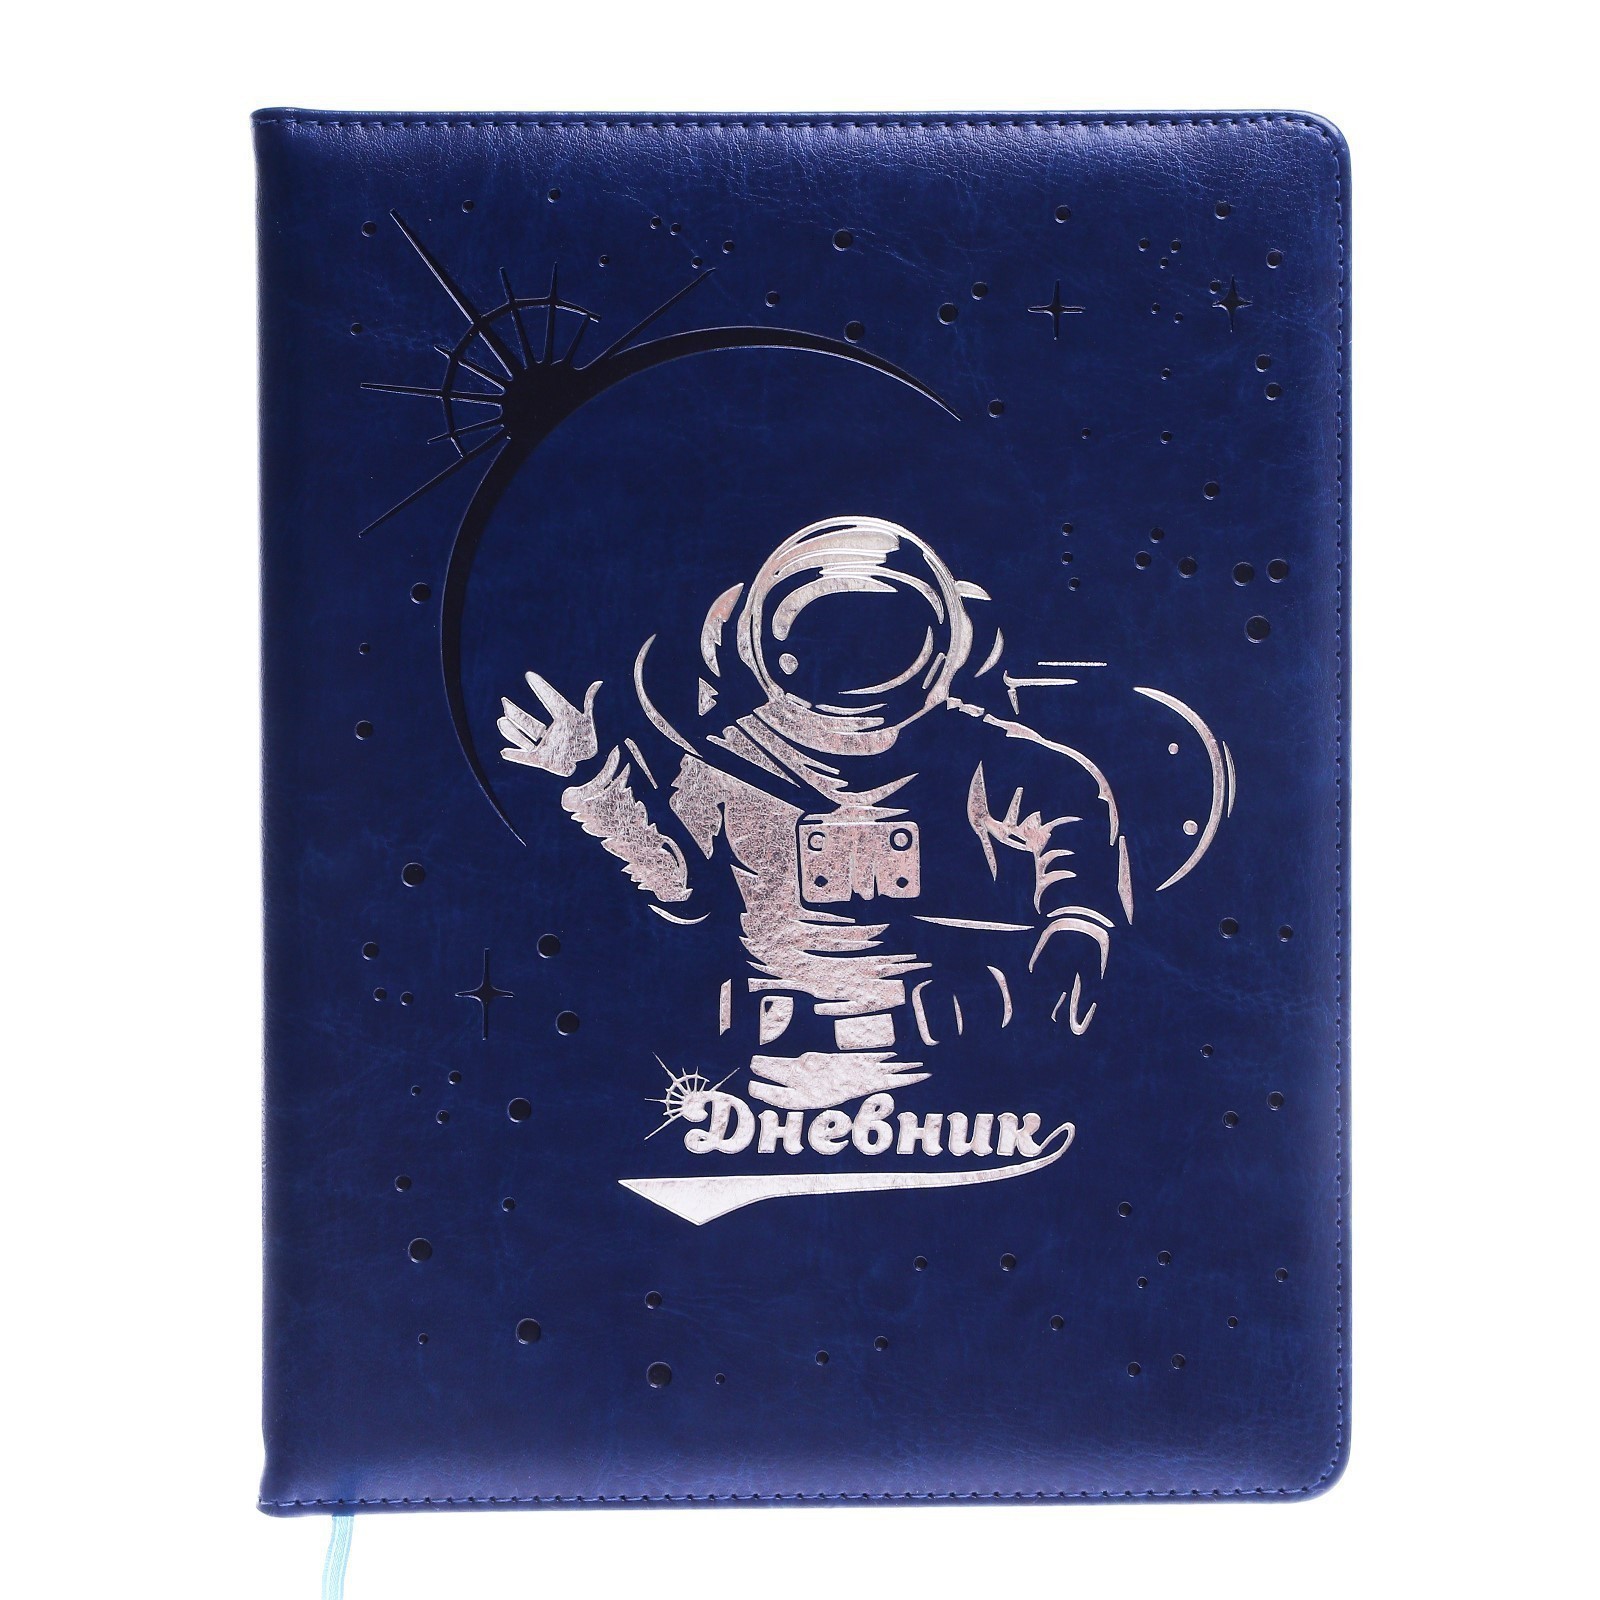 Дневник школьный Космонавт, 5-11 класс, обложка ПВХ, синий